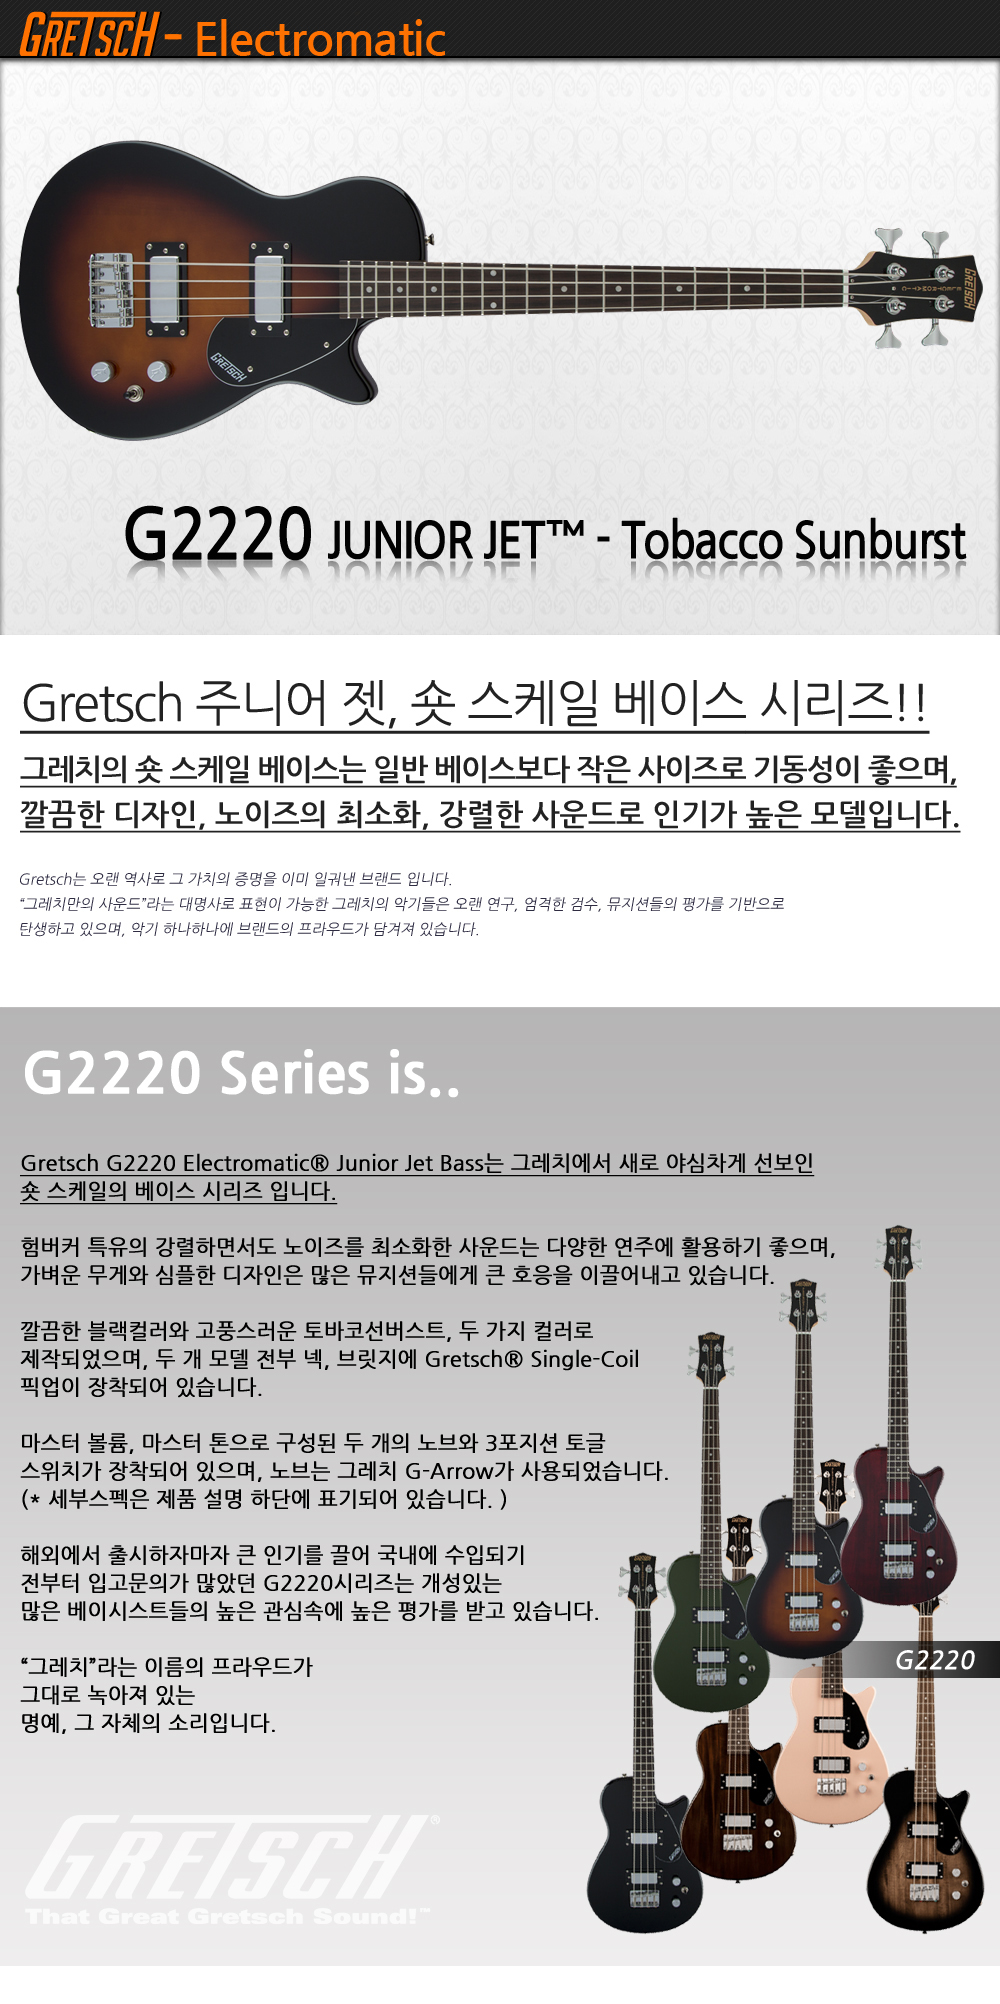 Gretsch-G2220-TobaccoSunburst_1_100417.jpg